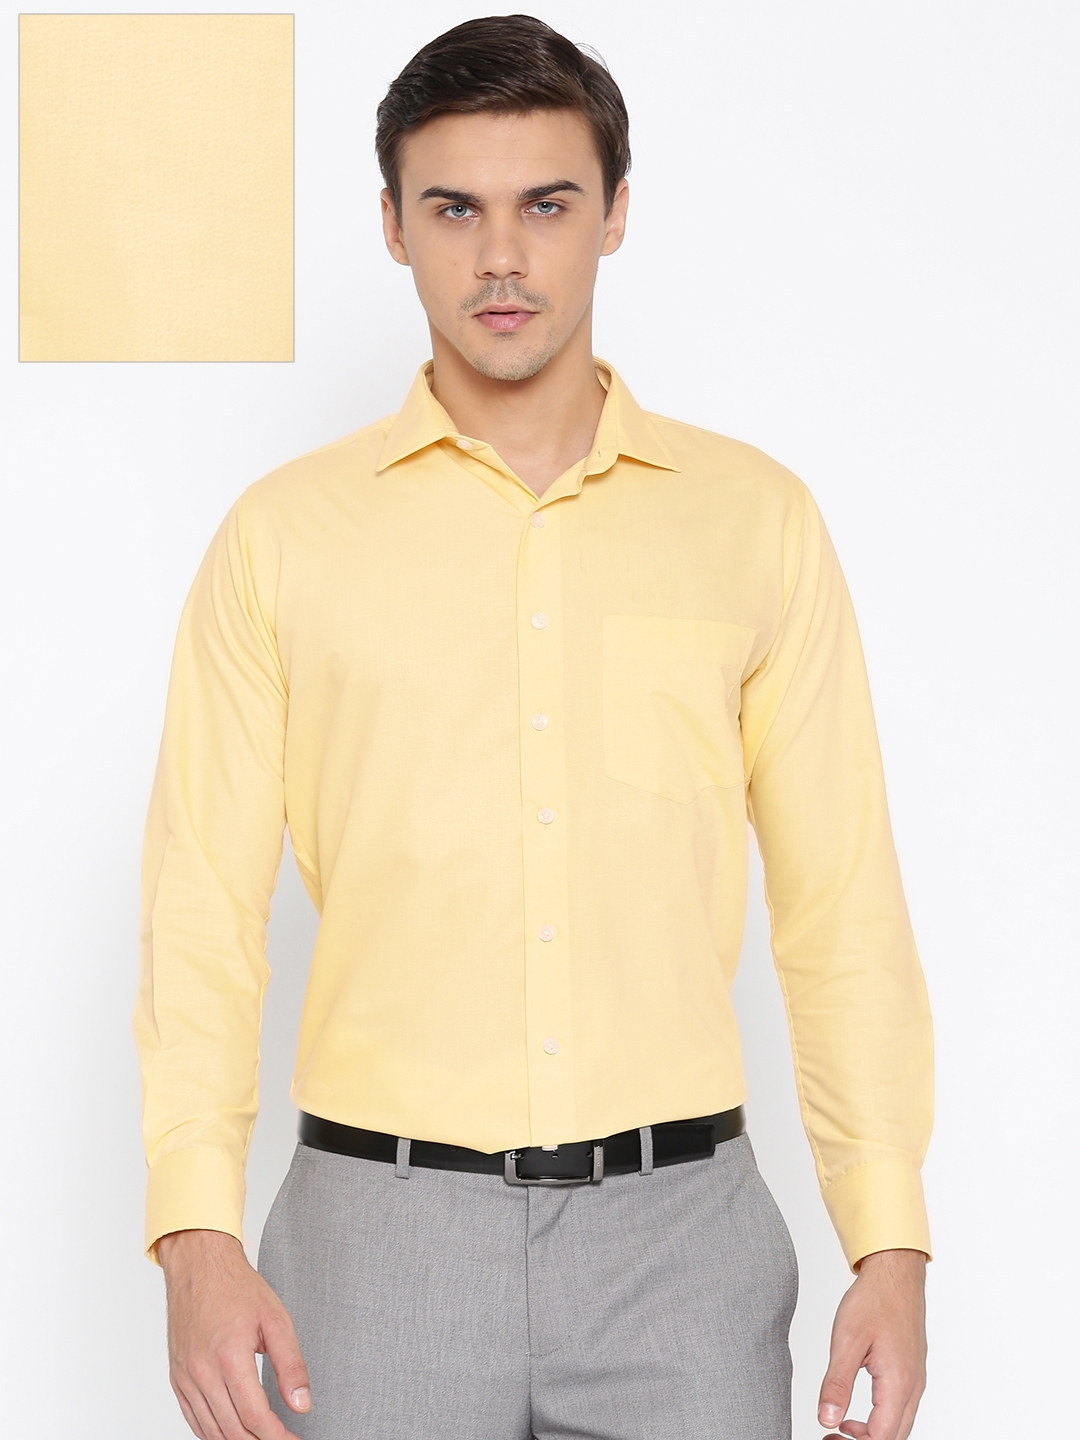 Yellow Shirt Matching Pant Ideas  Yellow Shirts Combination Pants   YouTube